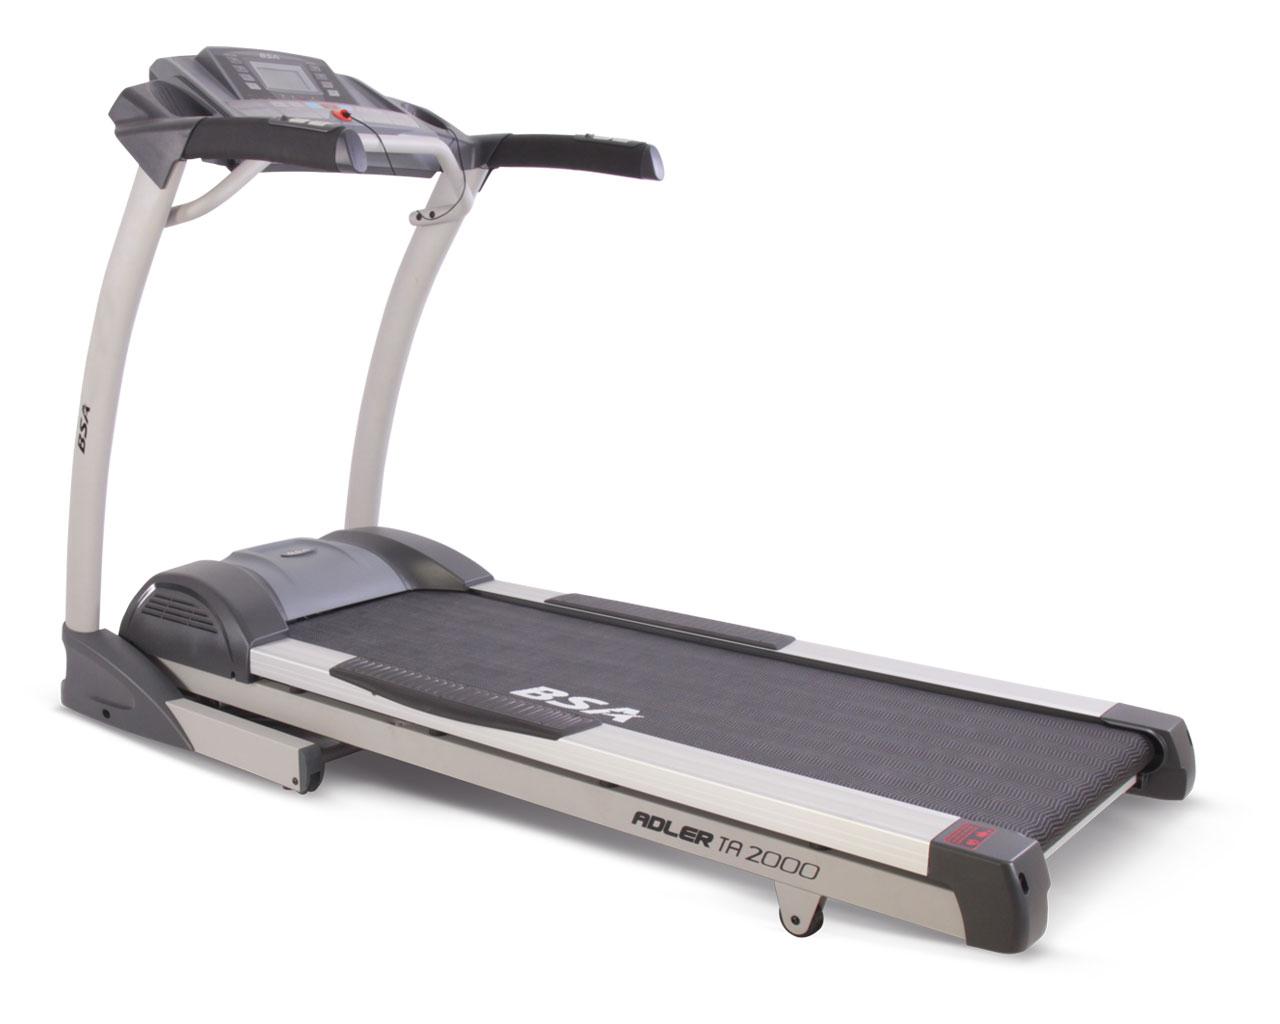 BSA Adler TA 2000 Treadmill